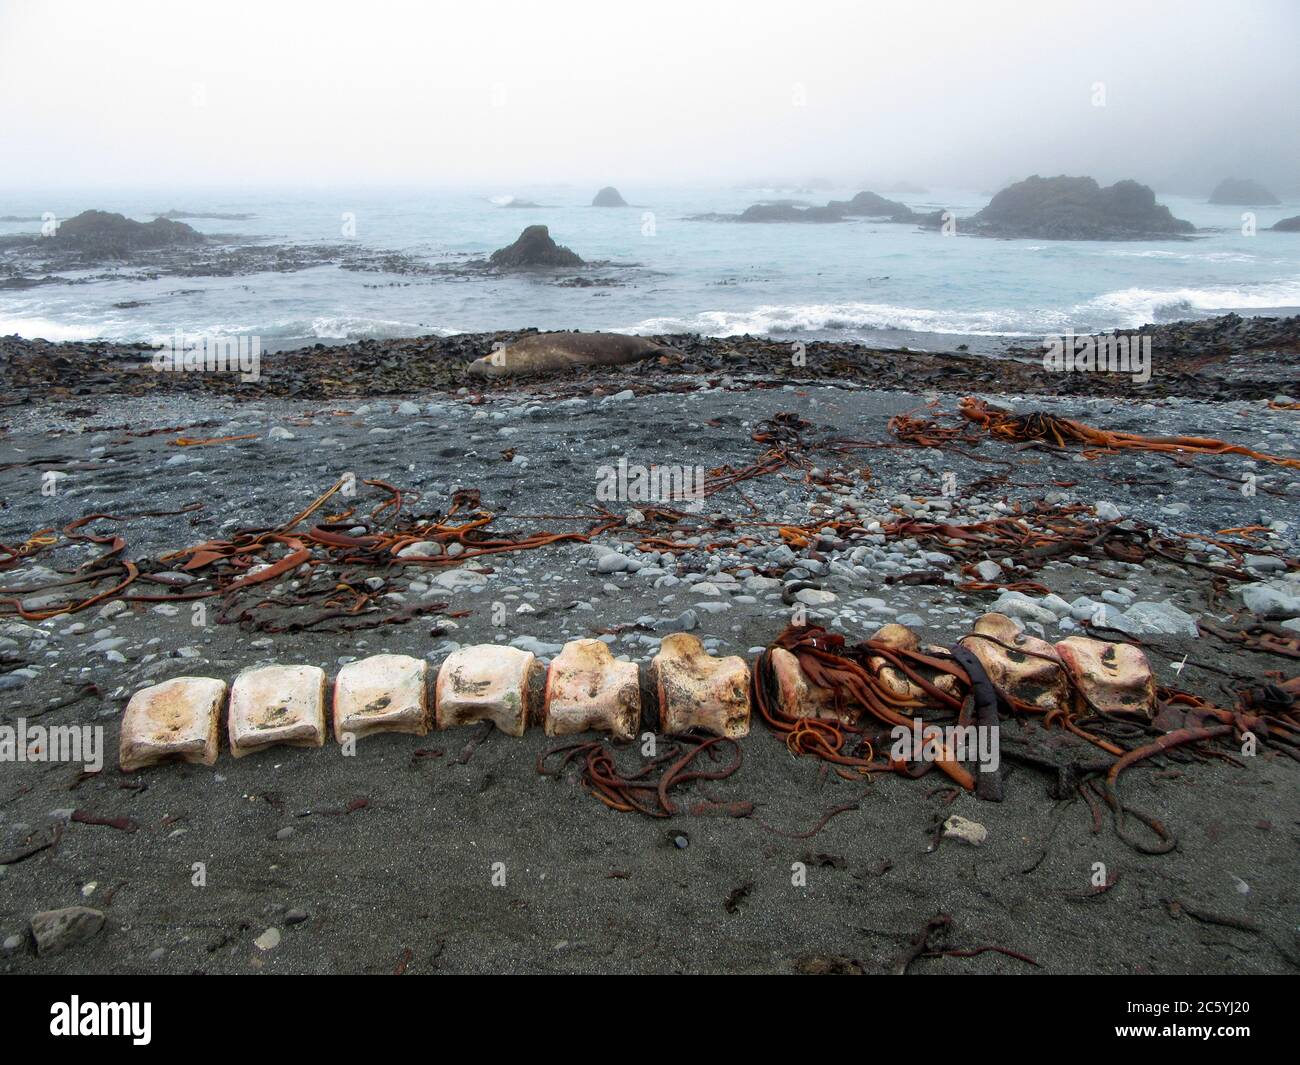 Überreste eines toten Wals, der auf Macquarie Island, einer Insel in der subantarktischen Region Australiens im südlichen pazifik, an Land gesetzt wurde. Stockfoto